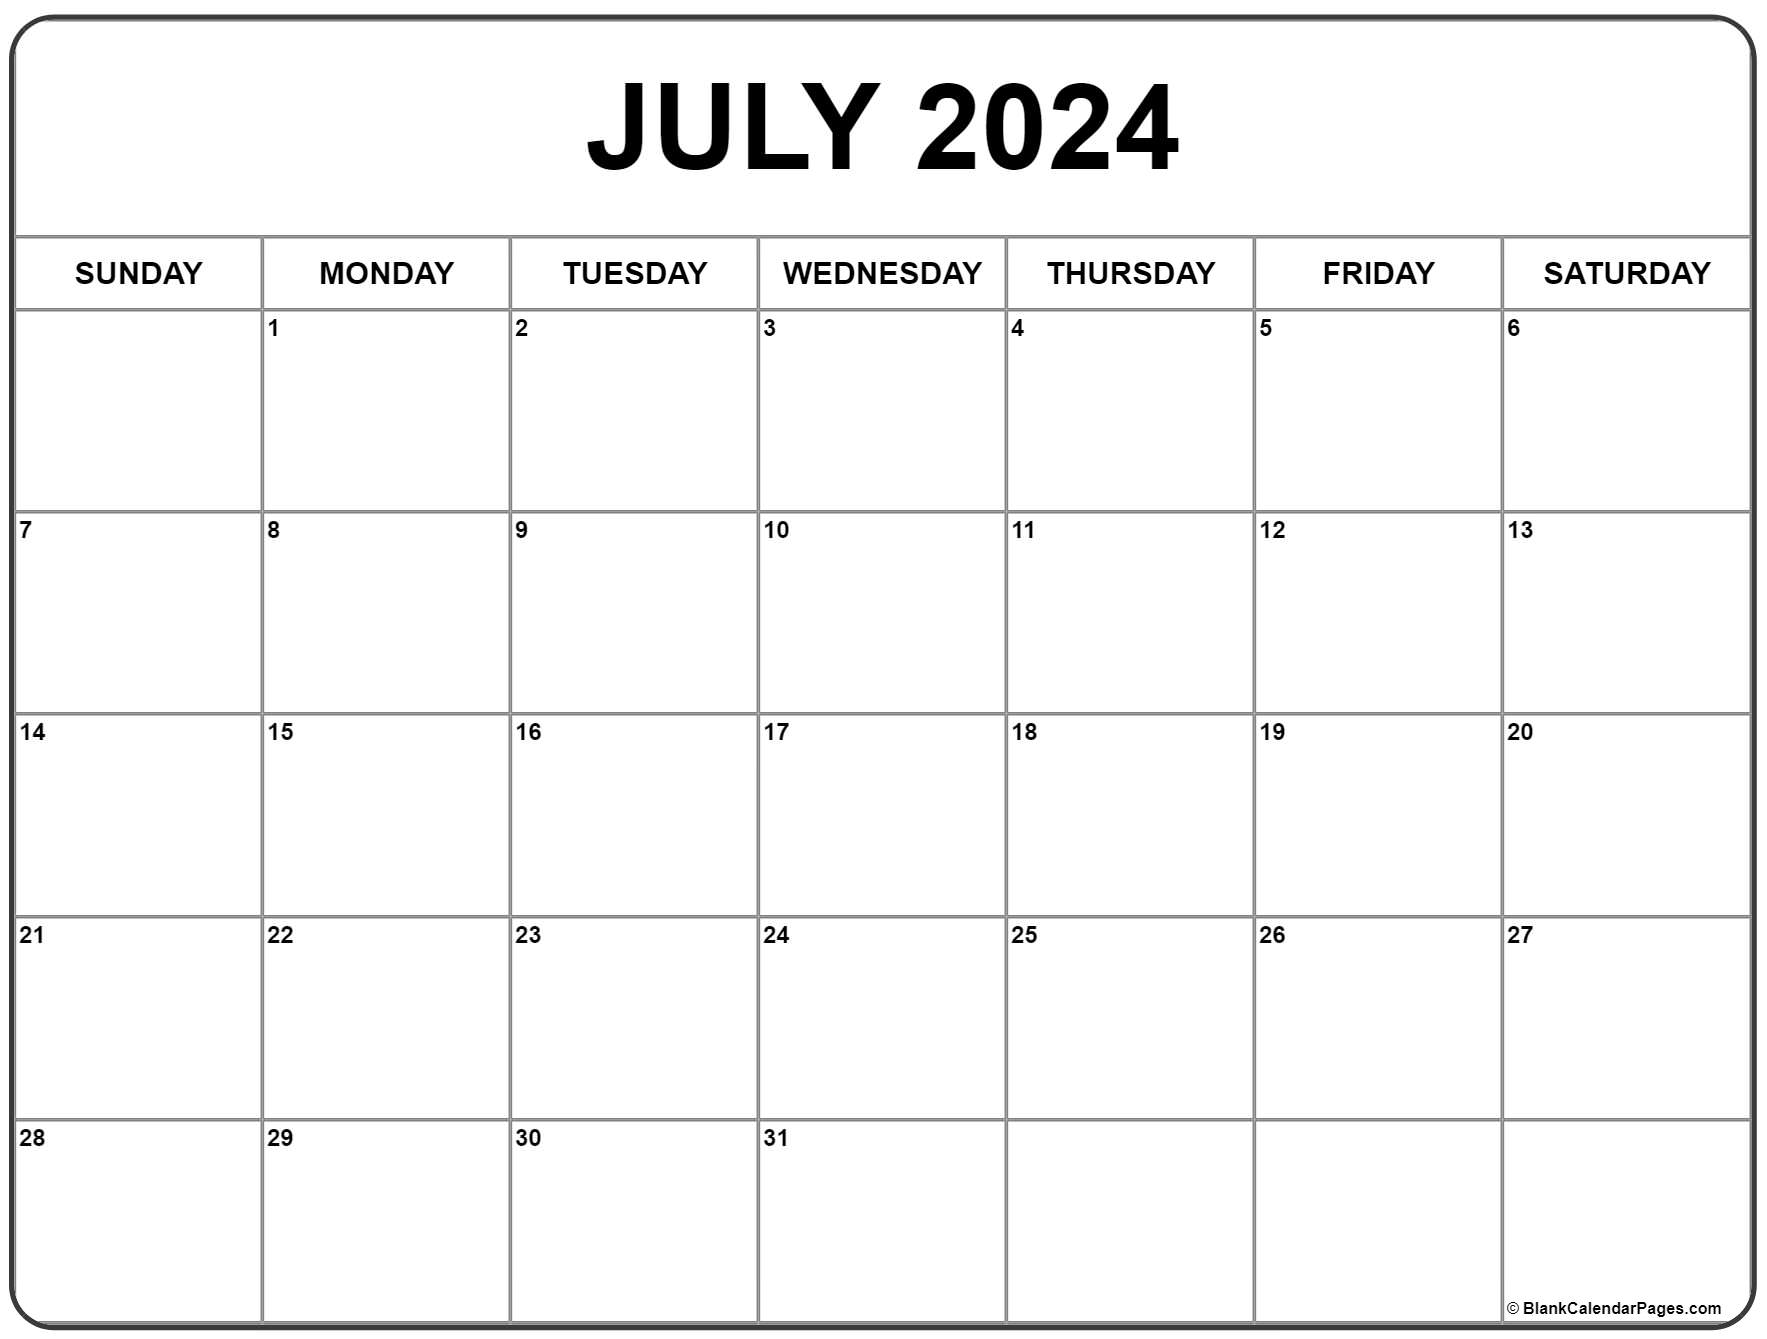 Printable Calendar 2022 June July August July 2022 Calendar | Free Printable Calendar Templates